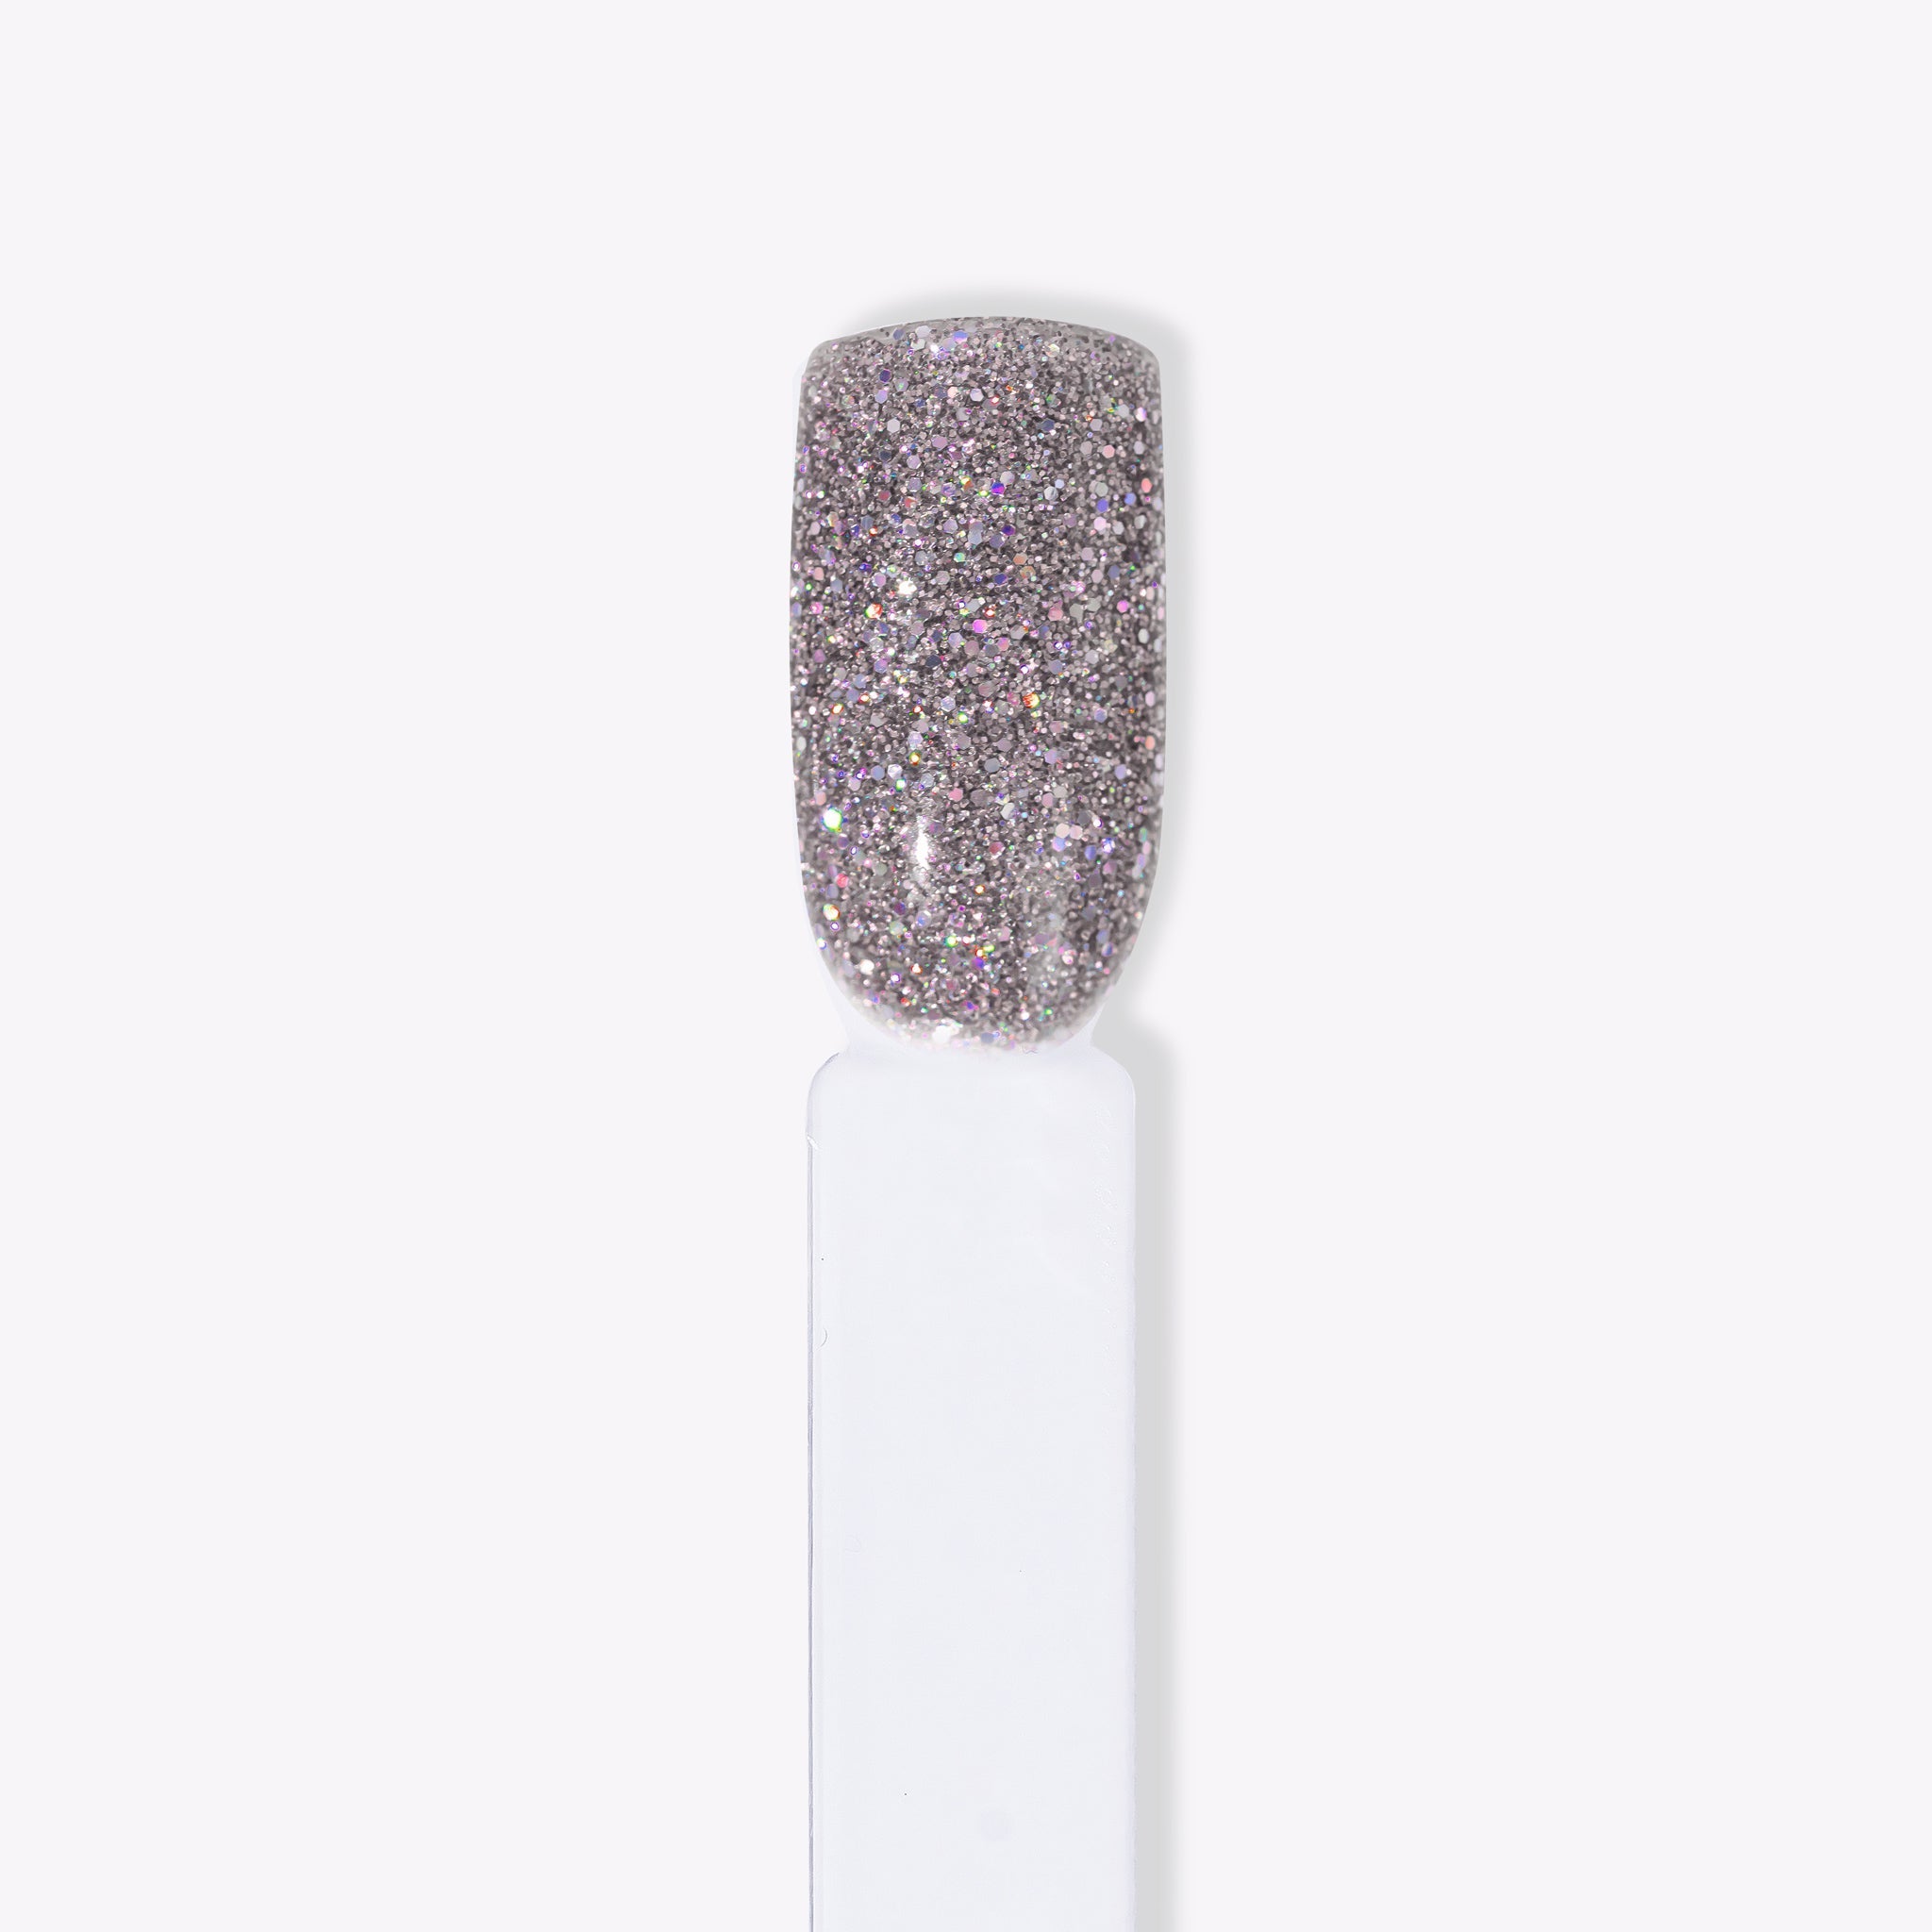 Närbild av silvrigt glitterpulver för naglar hemma och nageltrender 2024. Idealisk för hållbara naglar med nagelkit och gellack, skapar en skimrande look